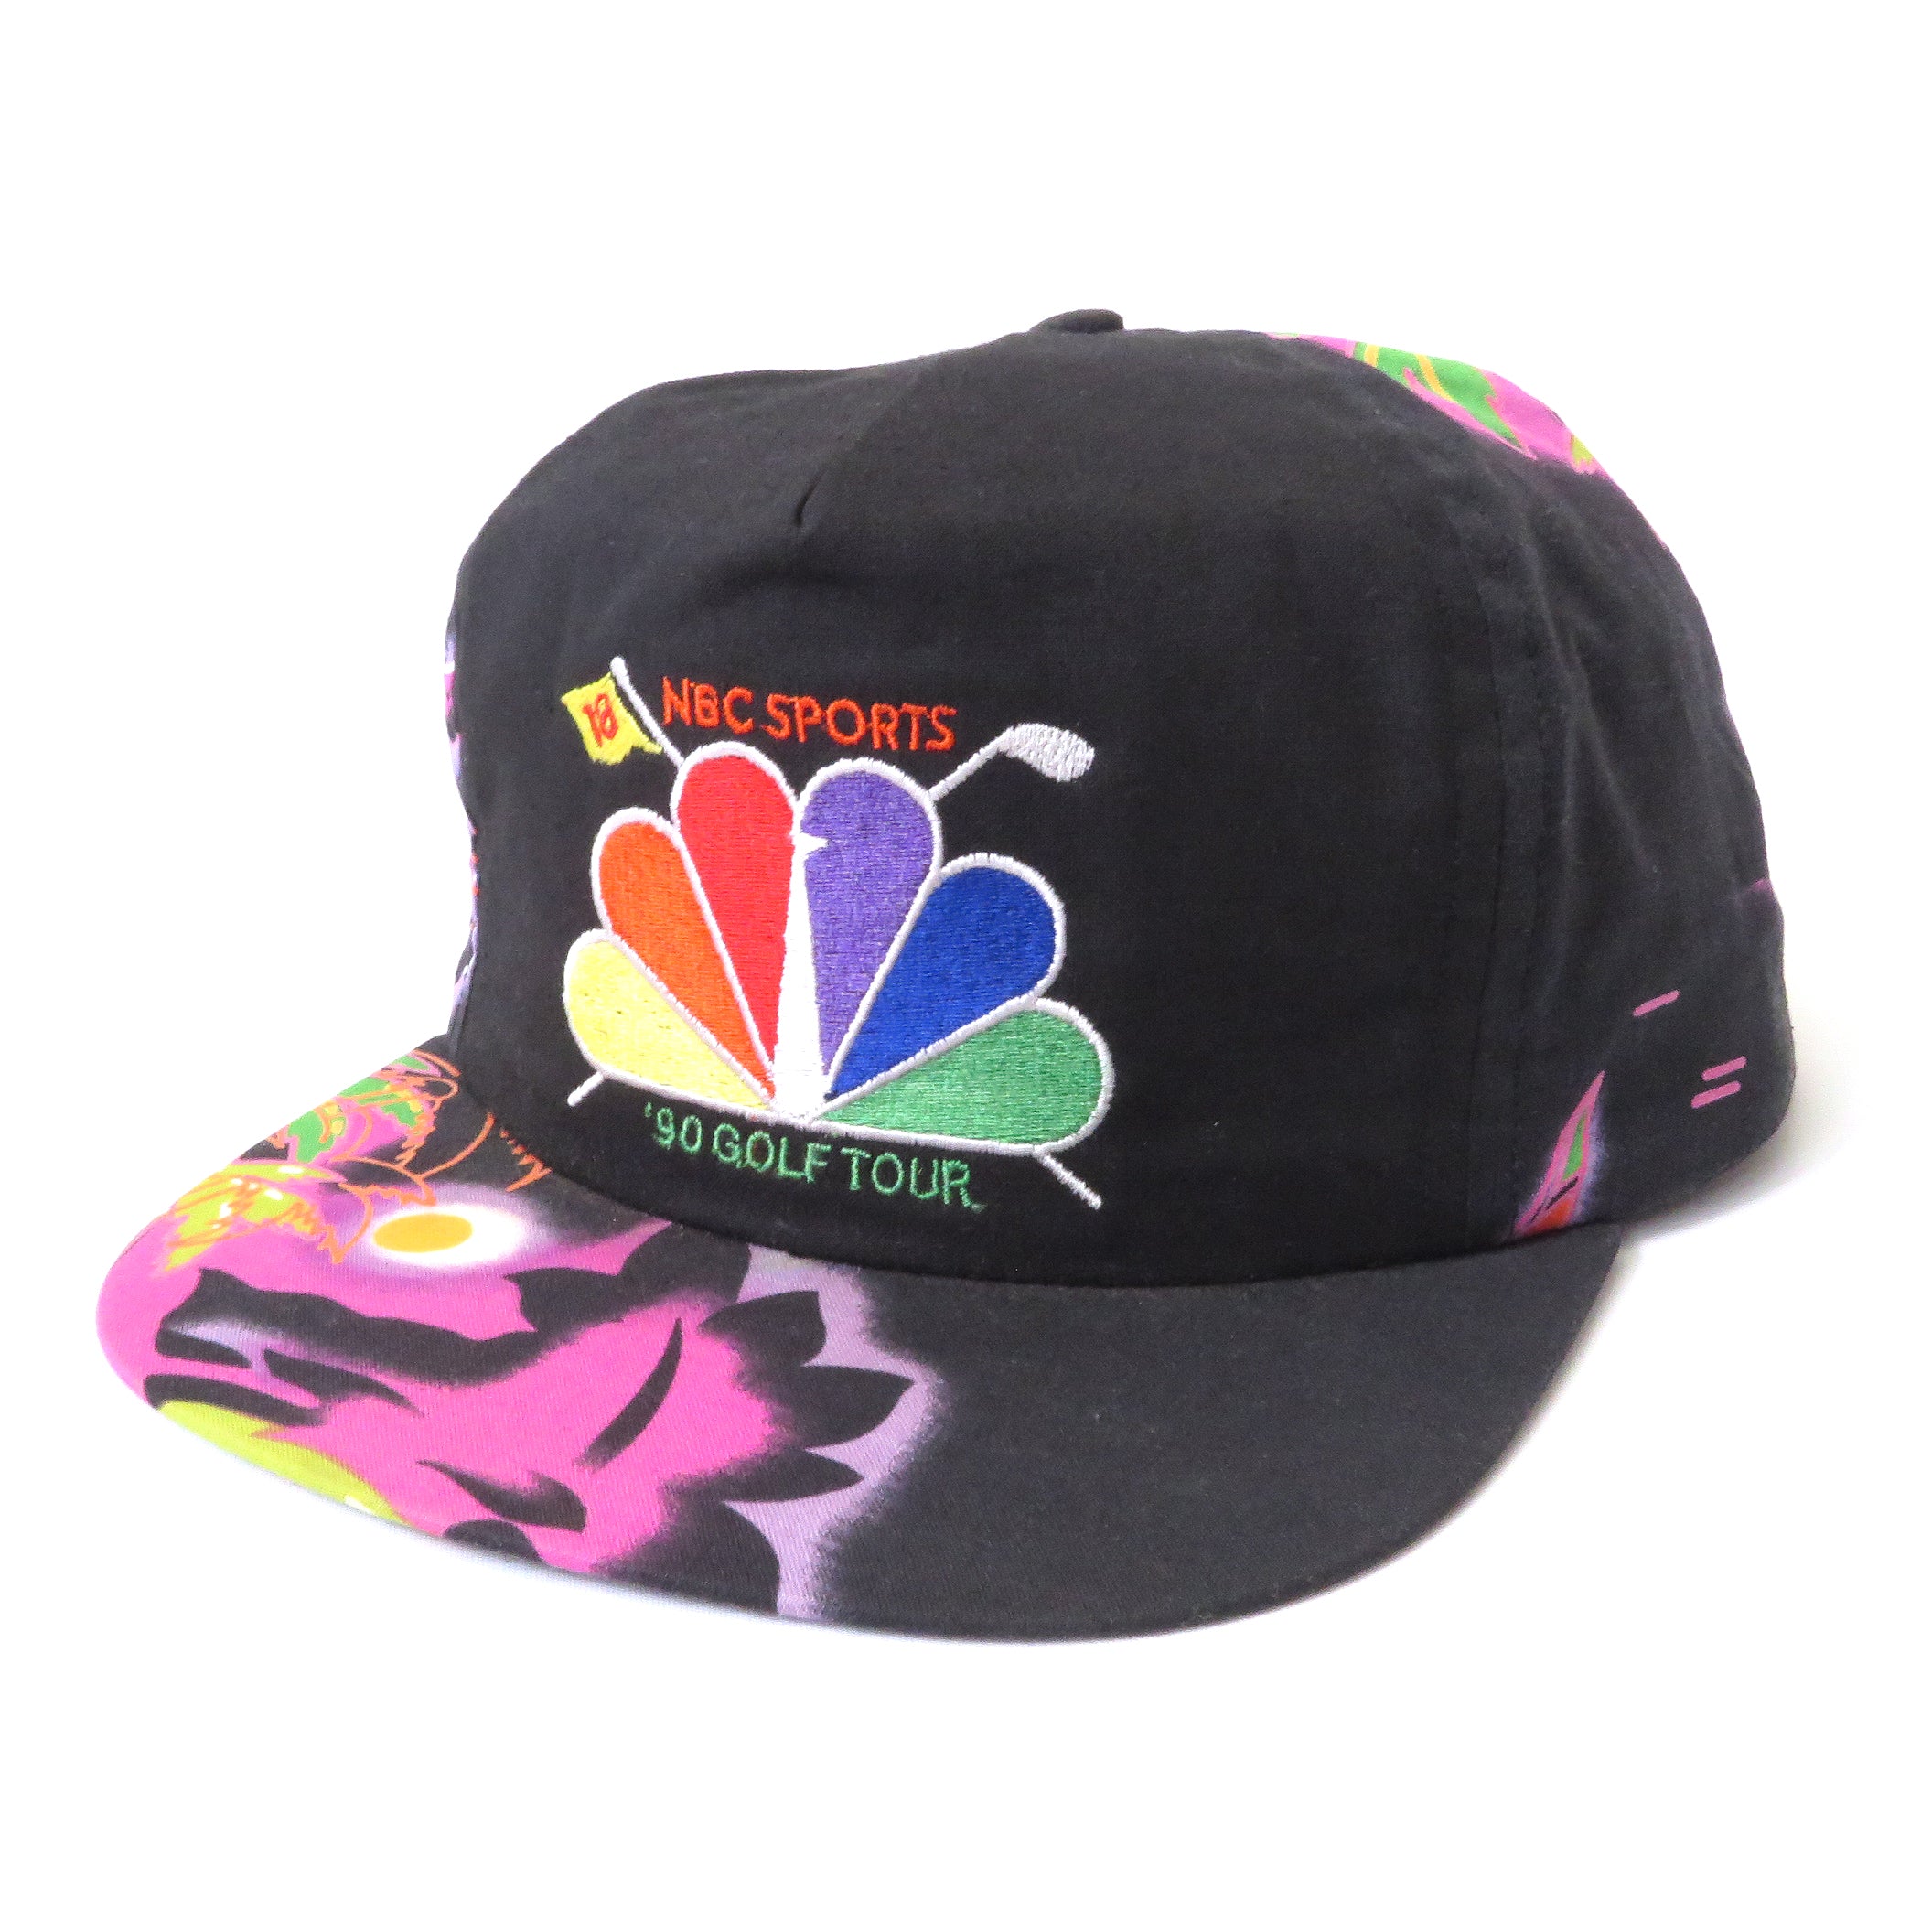 Vintage 1990 NBC Sports Golf Tour Floral Strapback Hat